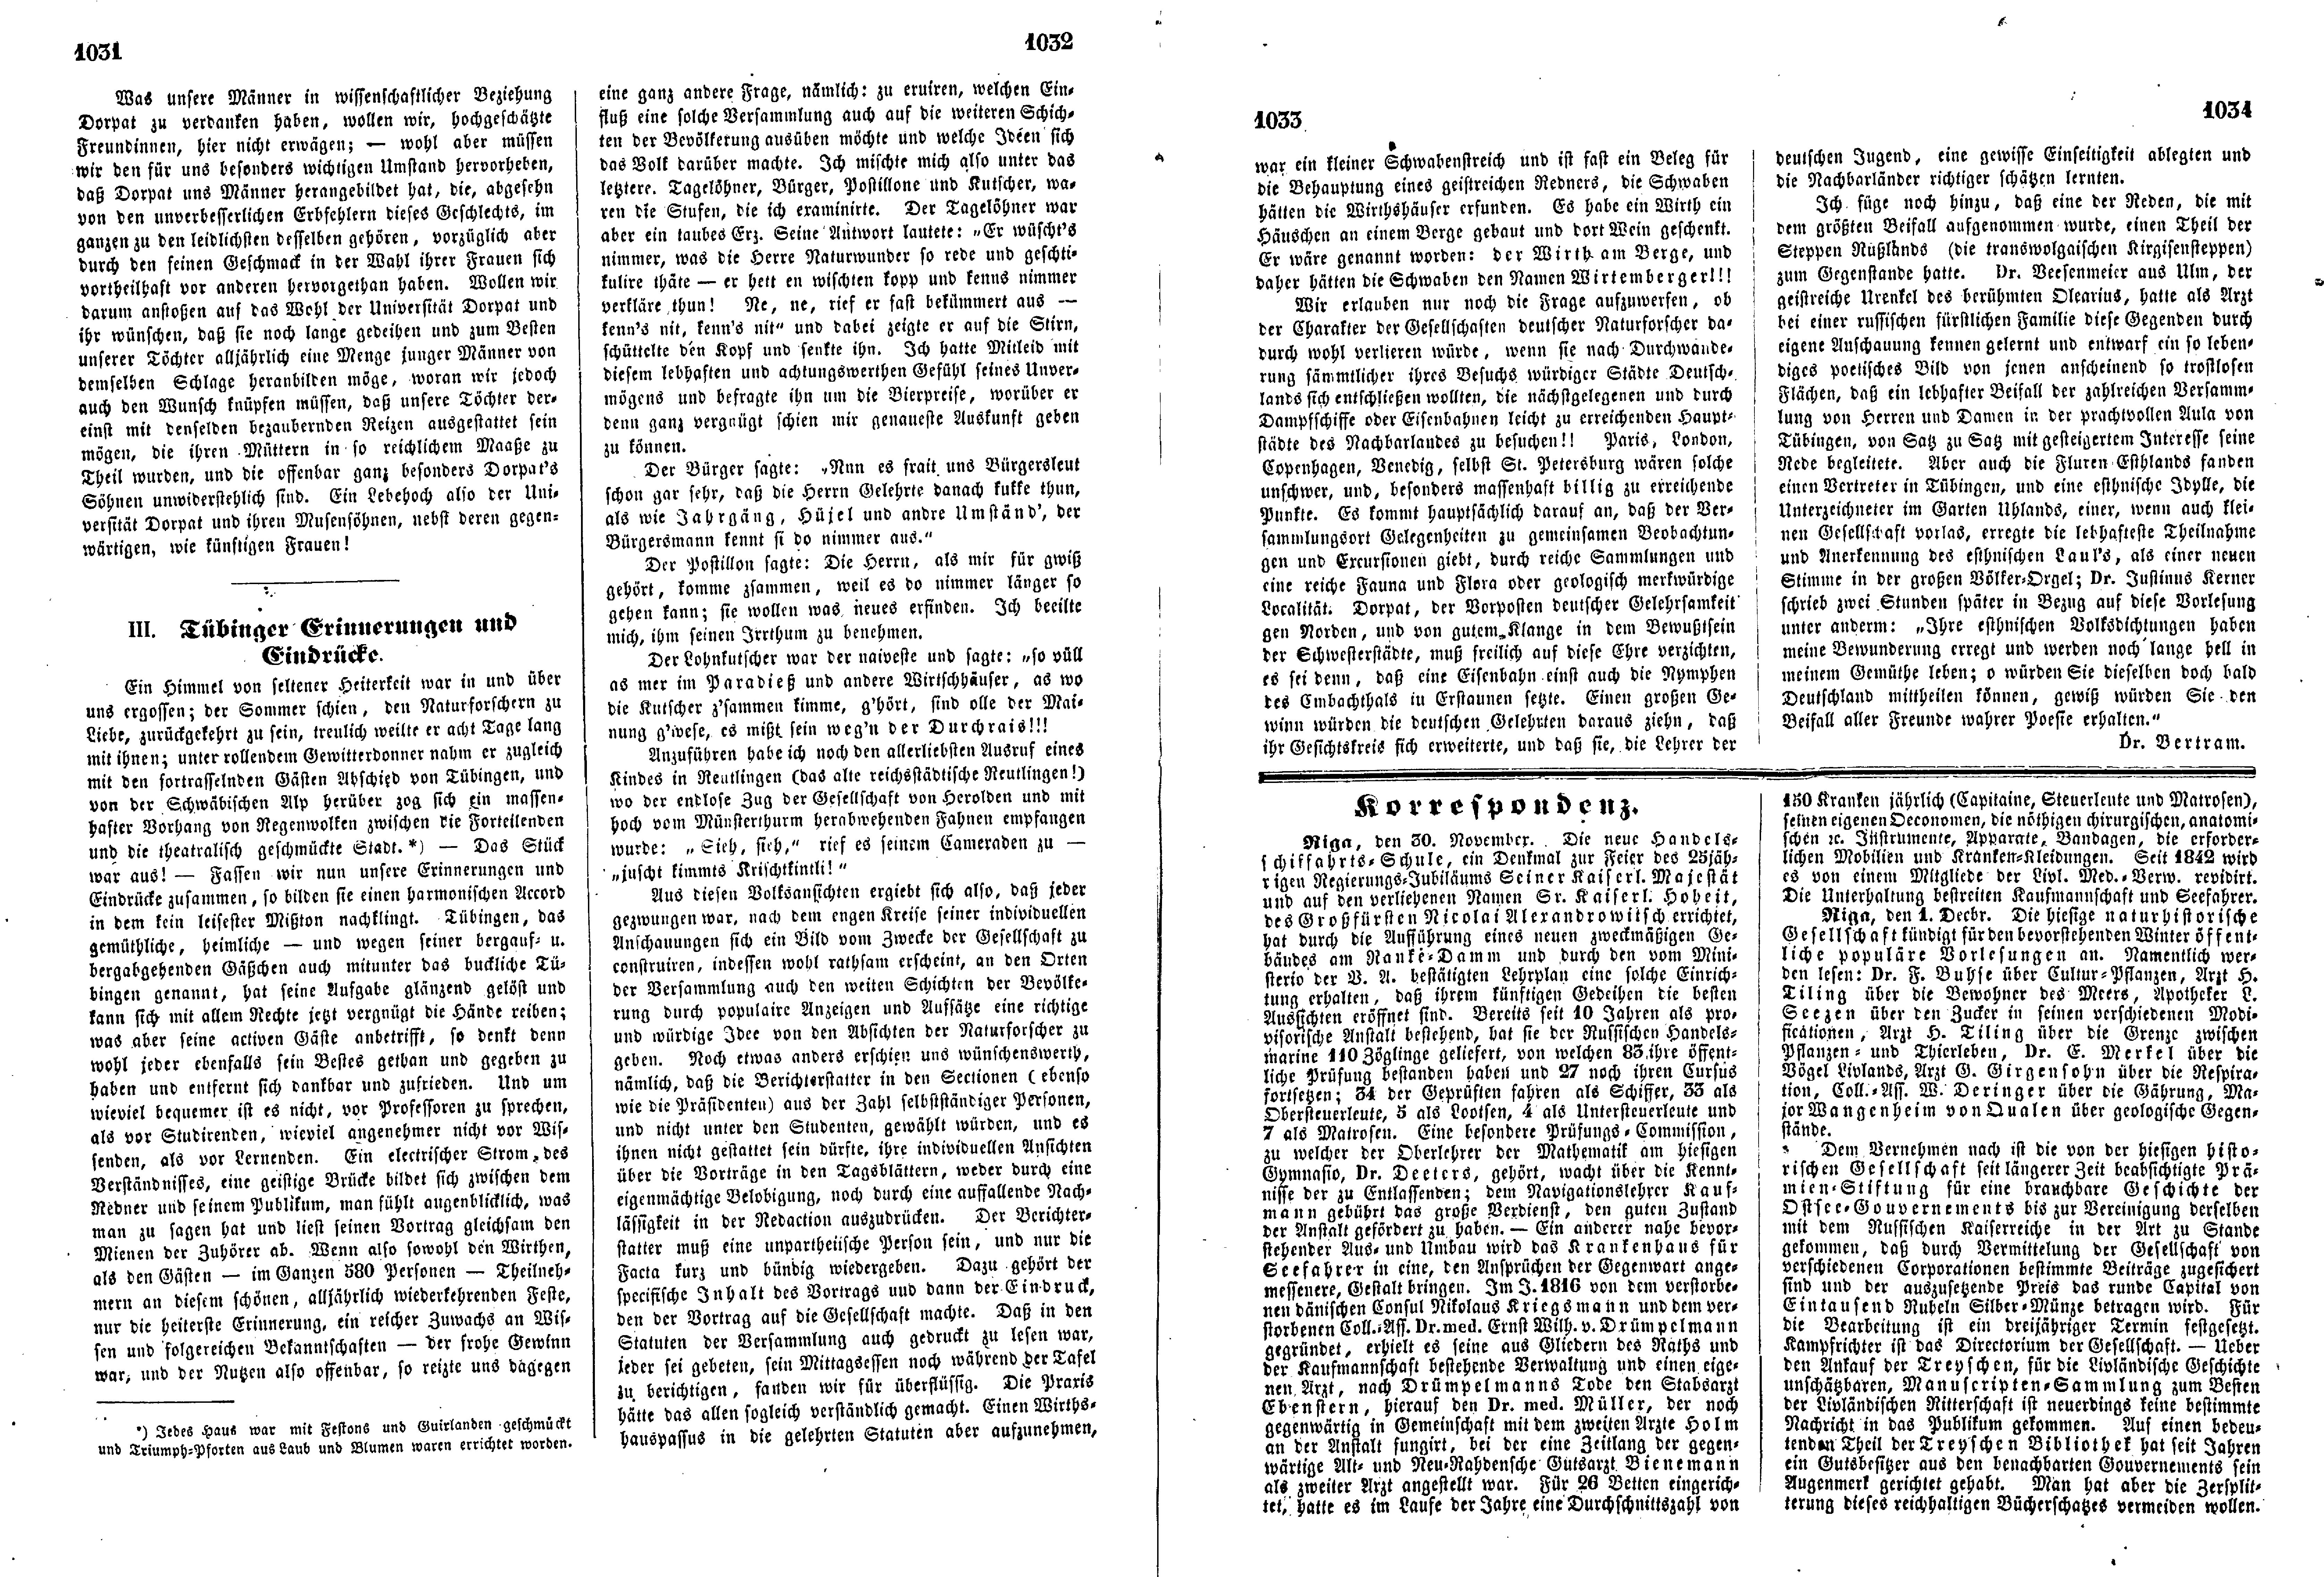 Tübinger Erinnerungen und Eindrücke (1853) | 1. (1031-1034) Main body of text